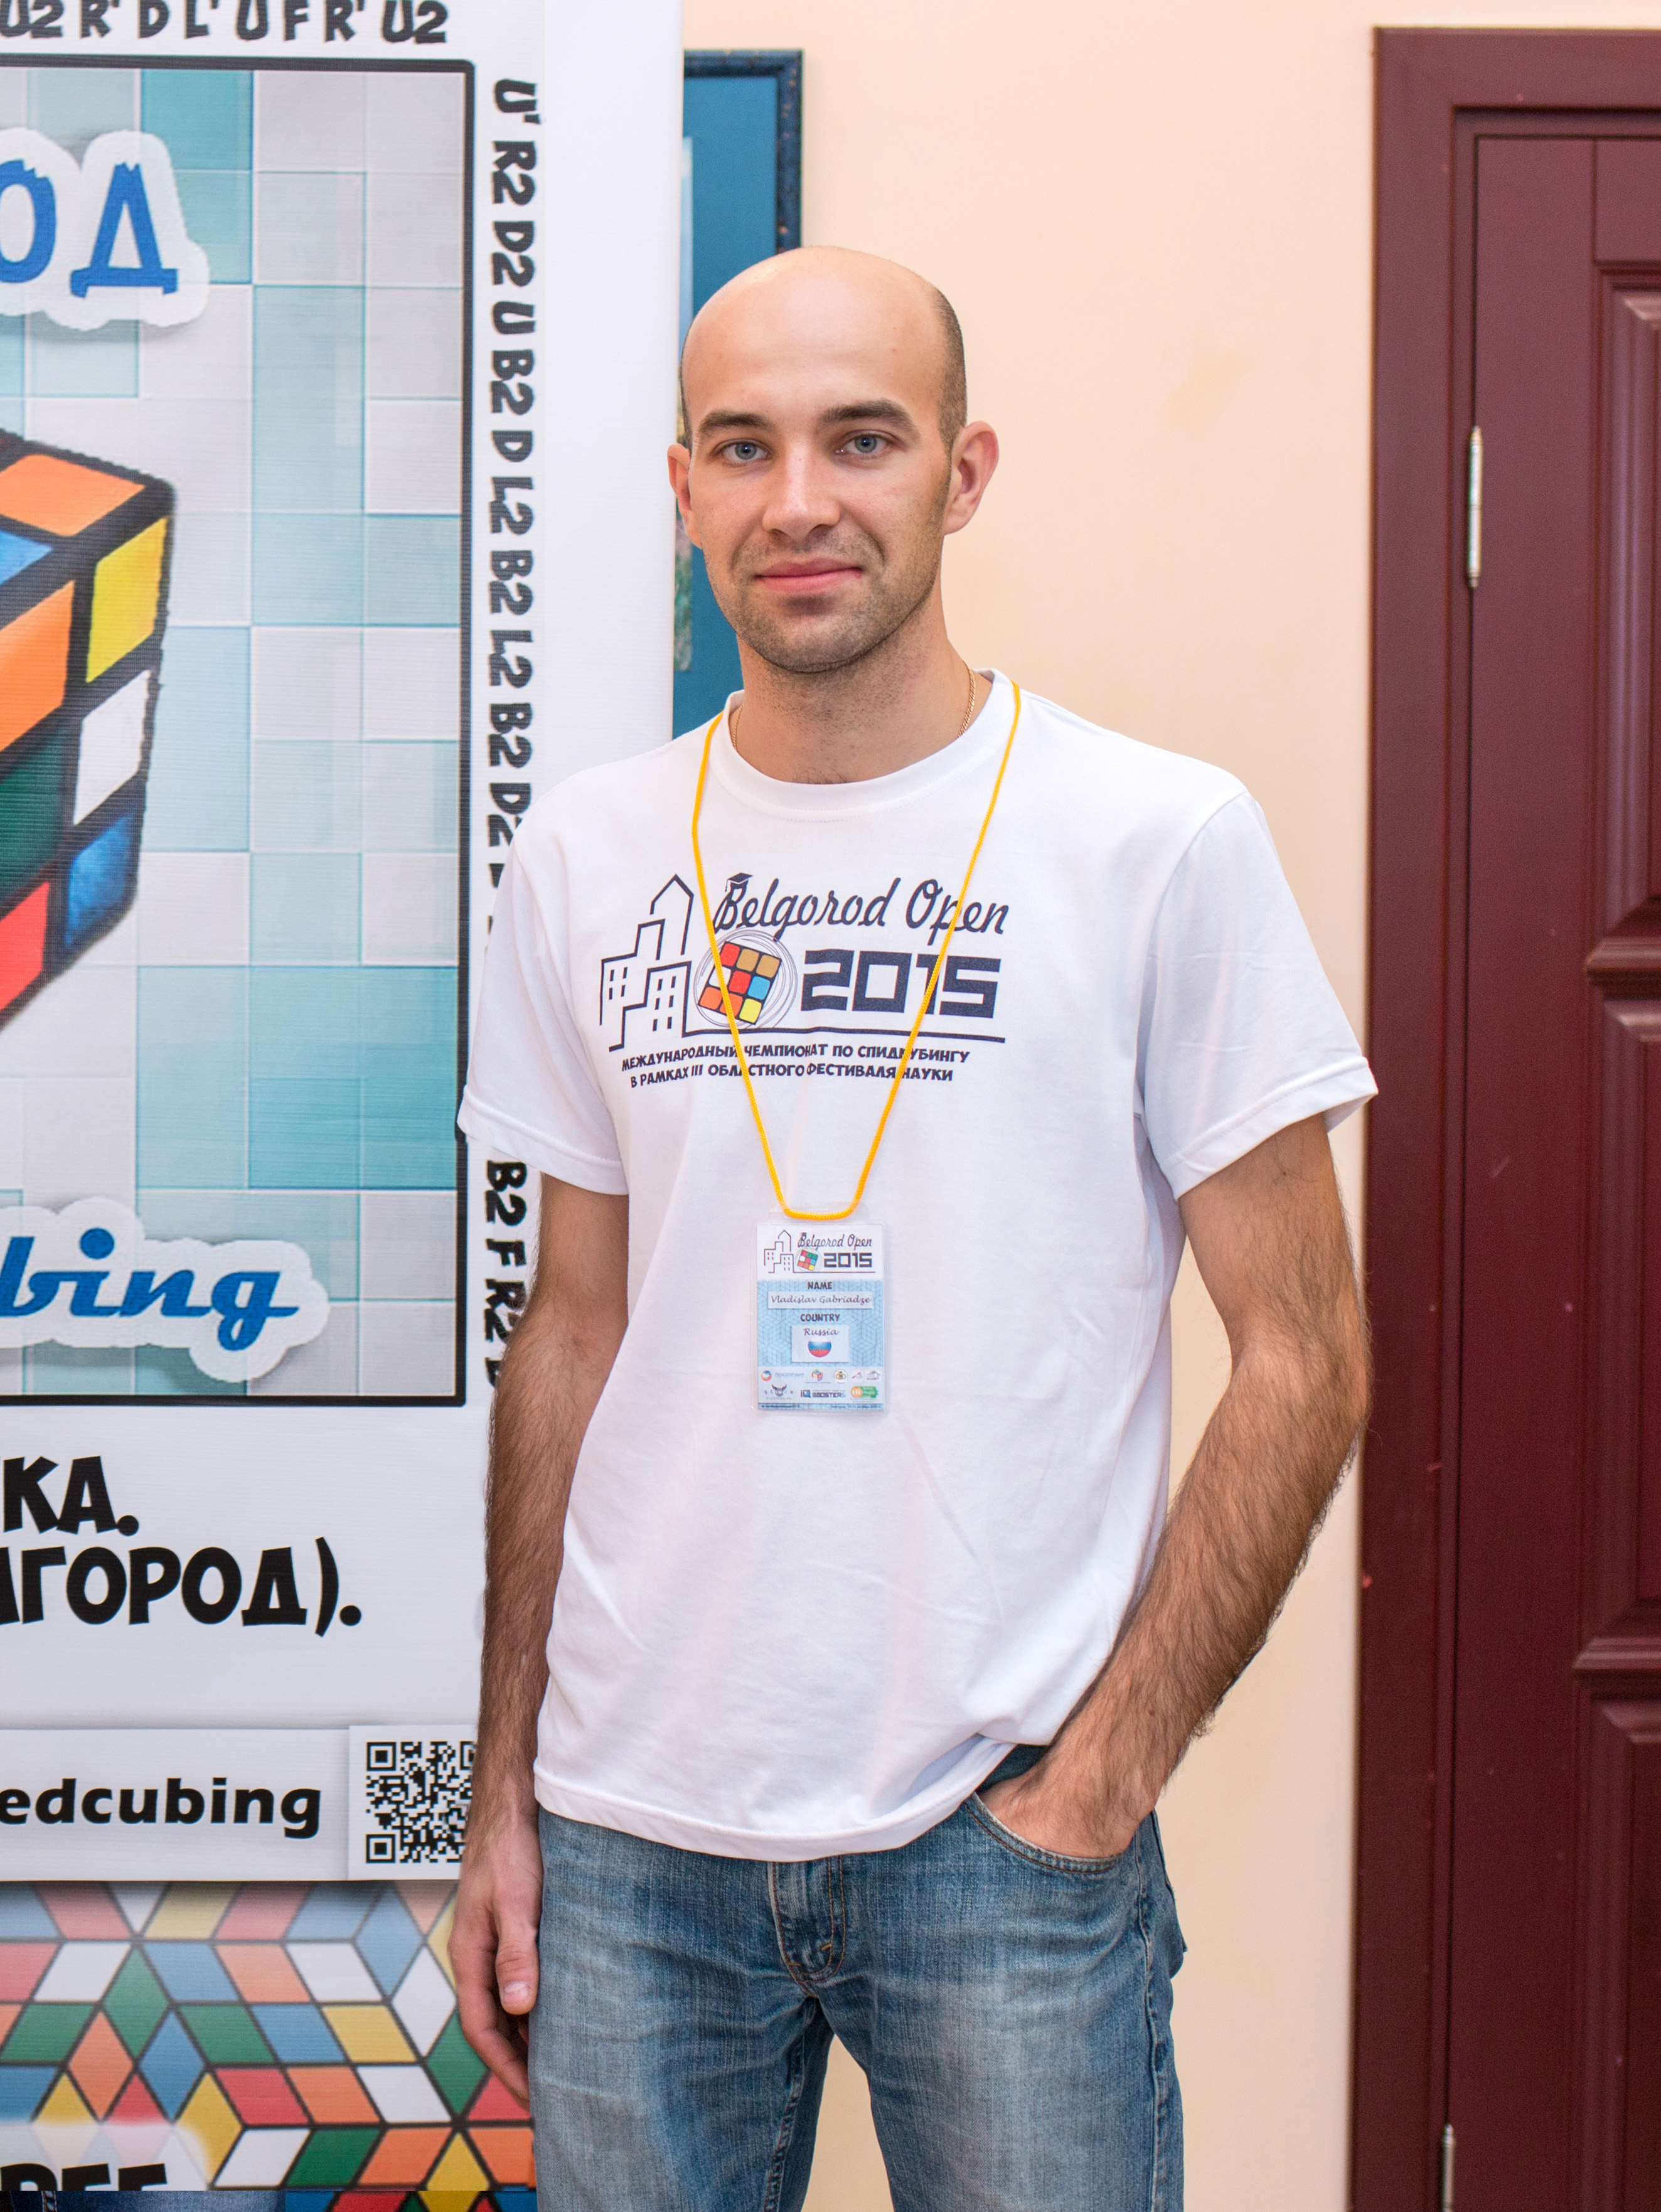 Лидер движения Спидкубинг (Белгород) - Робота Андрей